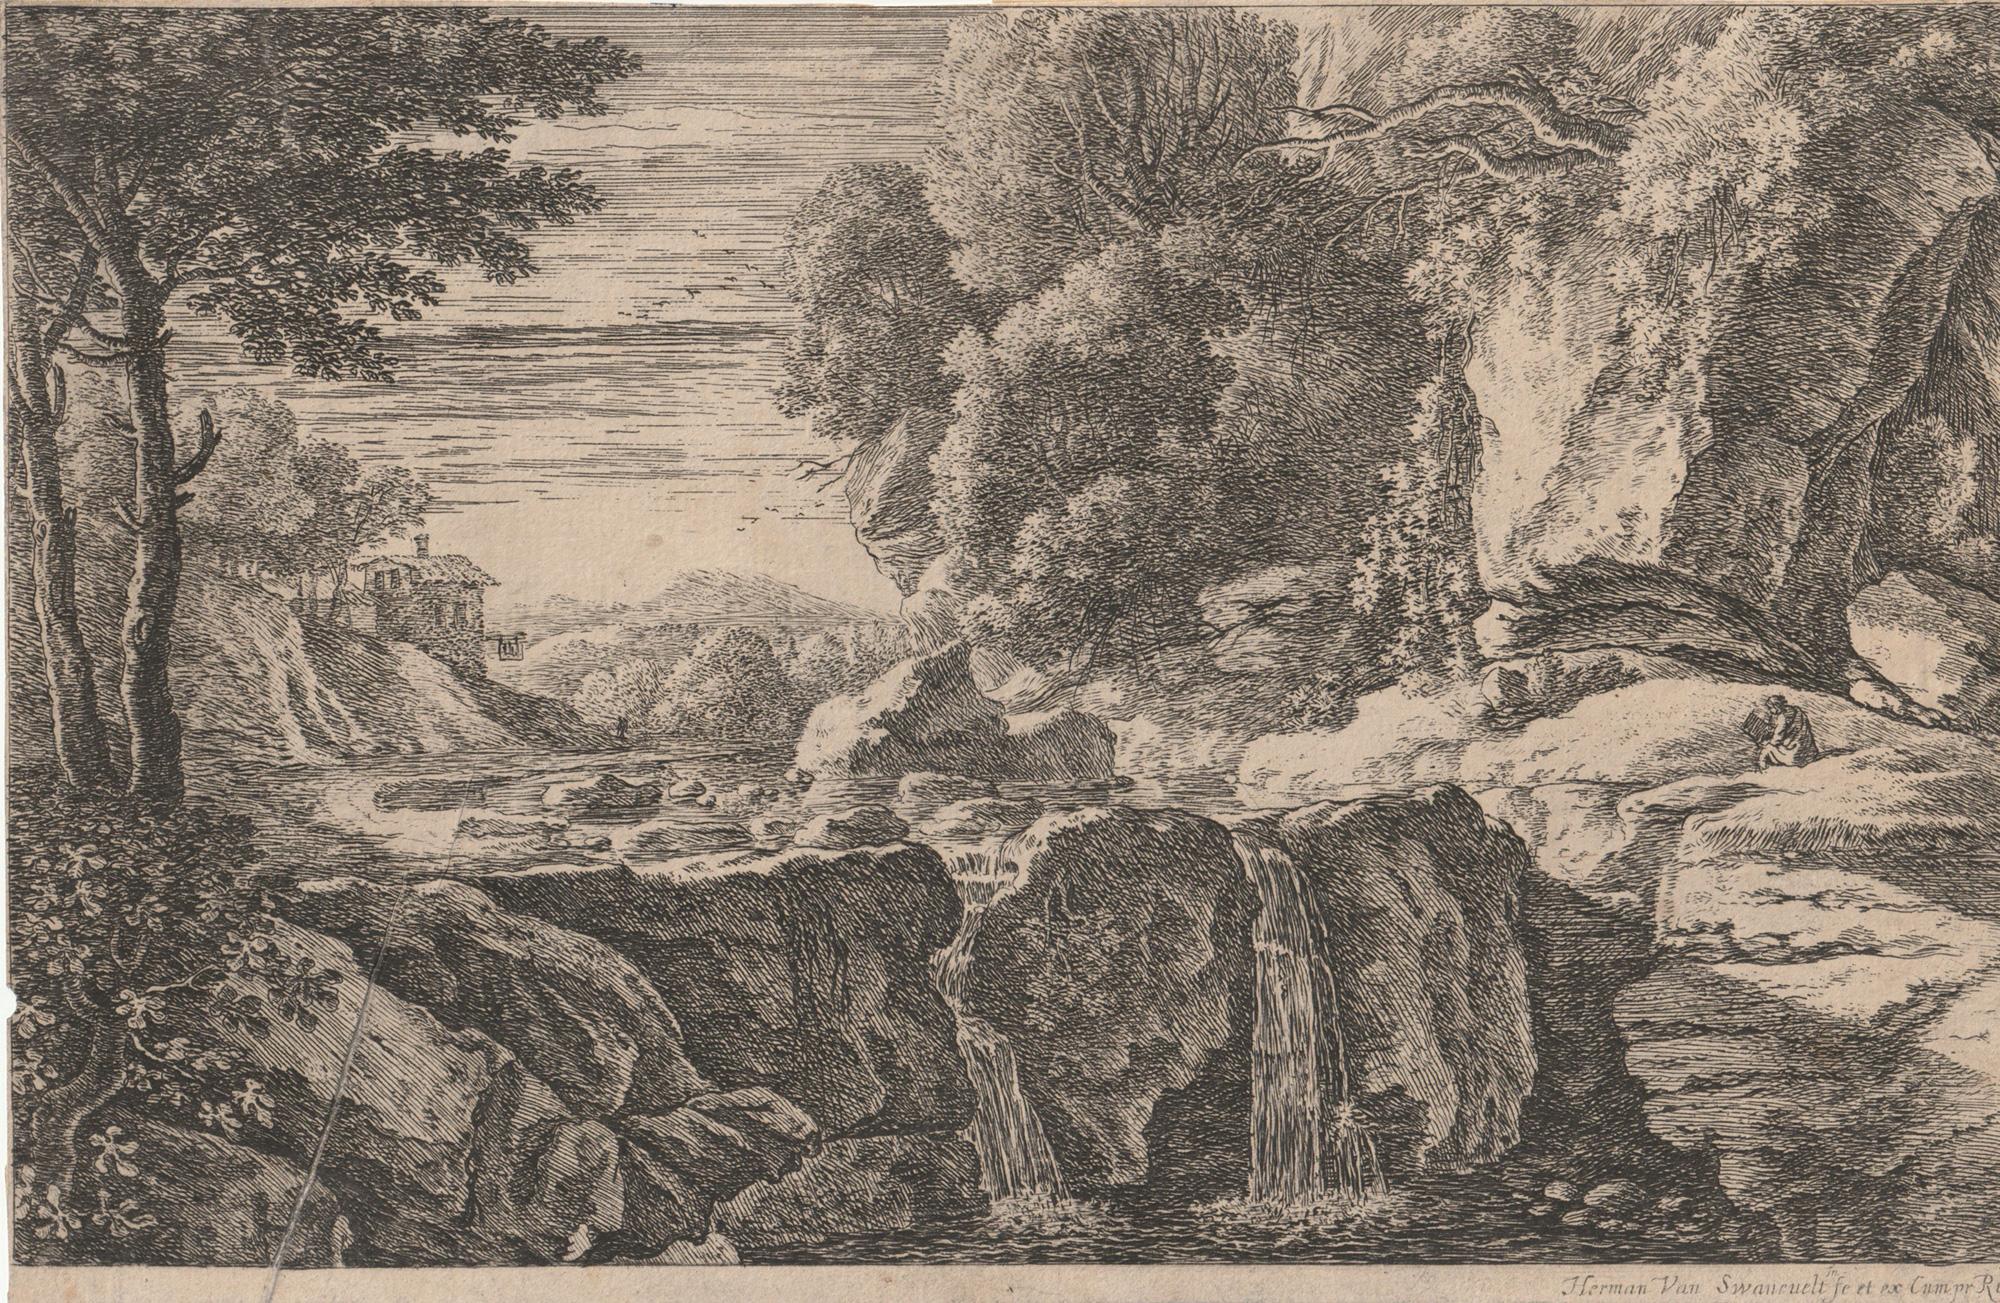 Herman van Swanevelt Landscape Print - The little waterfall (Der kleine wasserfall), from Four Landscapes.